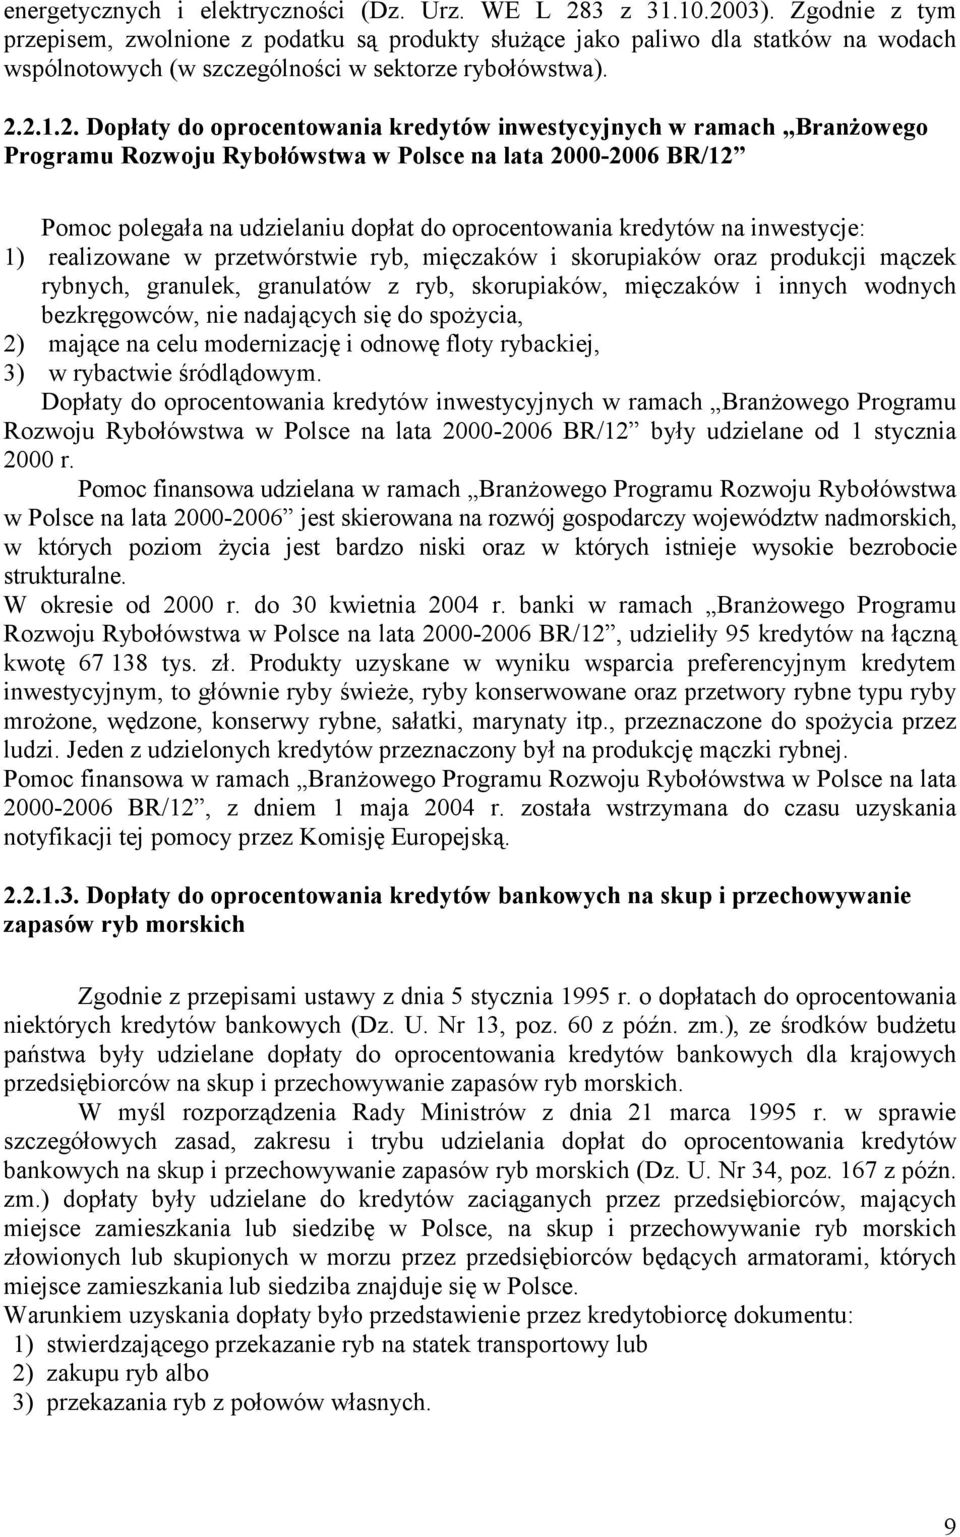 2.1.2. Dopłaty do oprocentowania kredytów inwestycyjnych w ramach Branżowego Programu Rozwoju Rybołówstwa w Polsce na lata 2000-2006 BR/12 Pomoc polegała na udzielaniu dopłat do oprocentowania